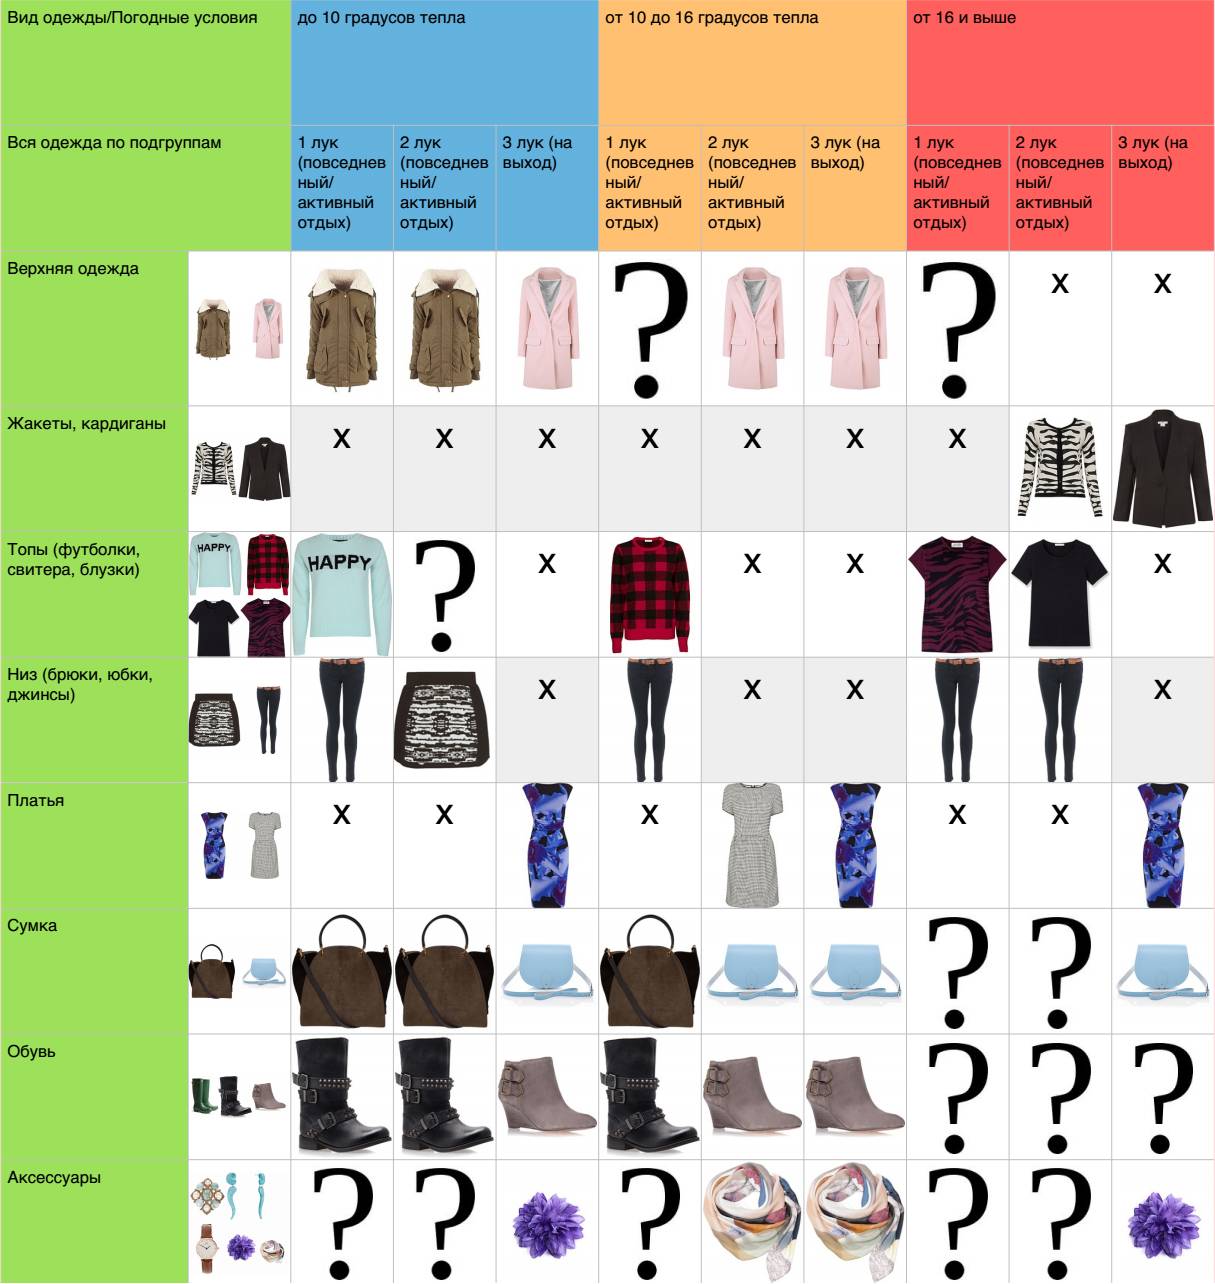 Примеры одежды